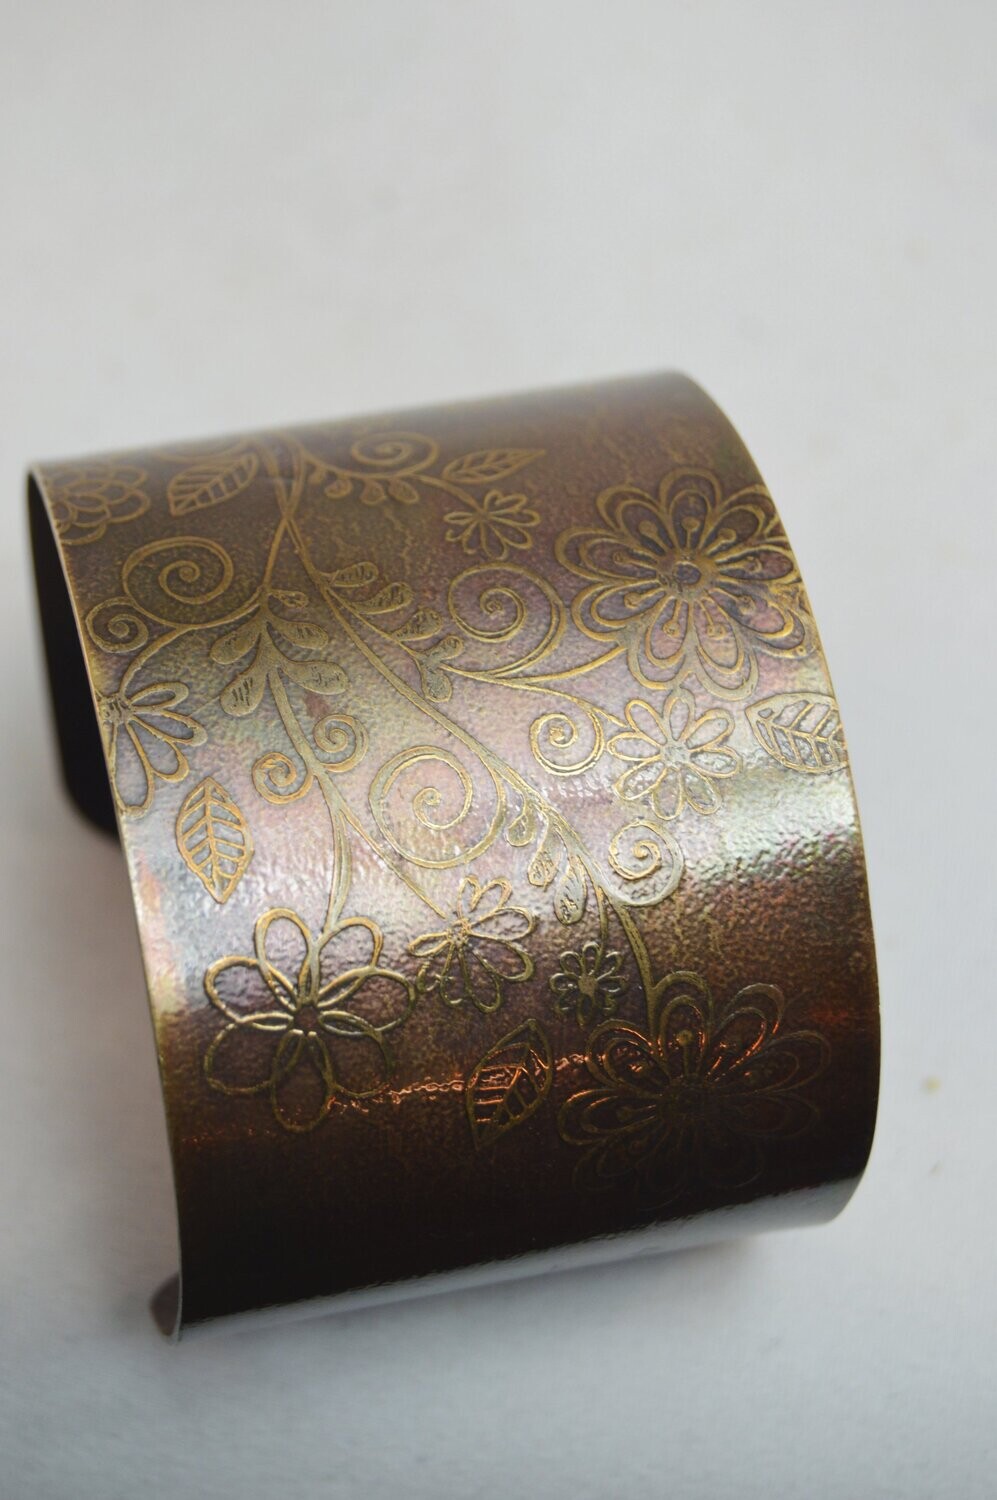 Etched copper bracelet